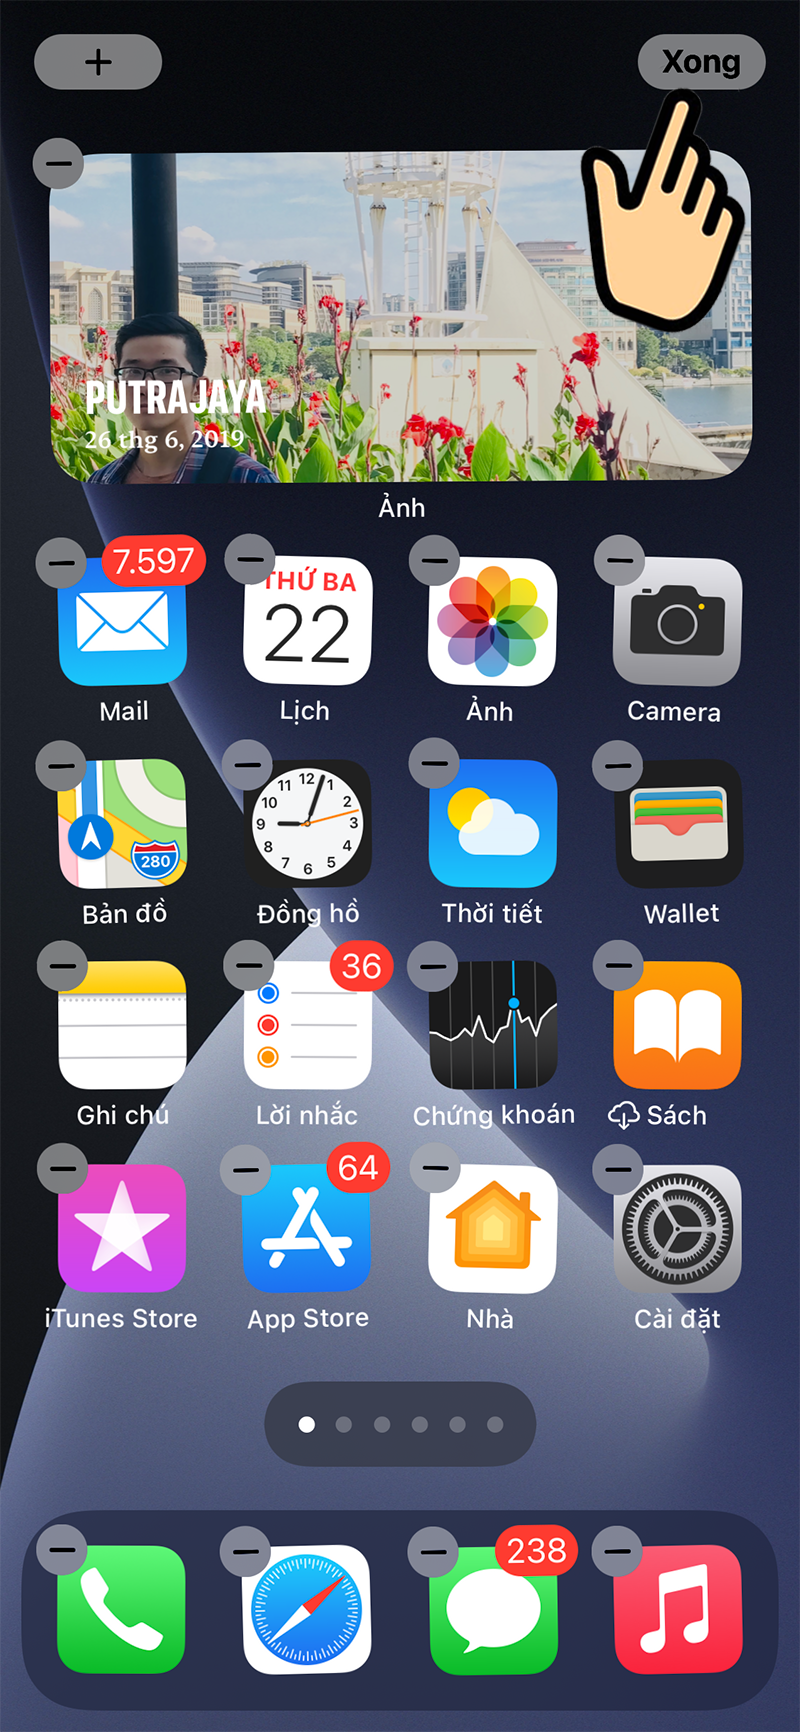 Hãy đổi widget ảnh trên màn hình chính của iPhone iOS 14 để tăng sự độc đáo và phong phú cho điện thoại của bạn. Với chức năng đổi widget ảnh, bạn có thể thay đổi theo sở thích của mình và tạo nên một màn hình chính đẹp mắt và đầy tính cá nhân hóa.